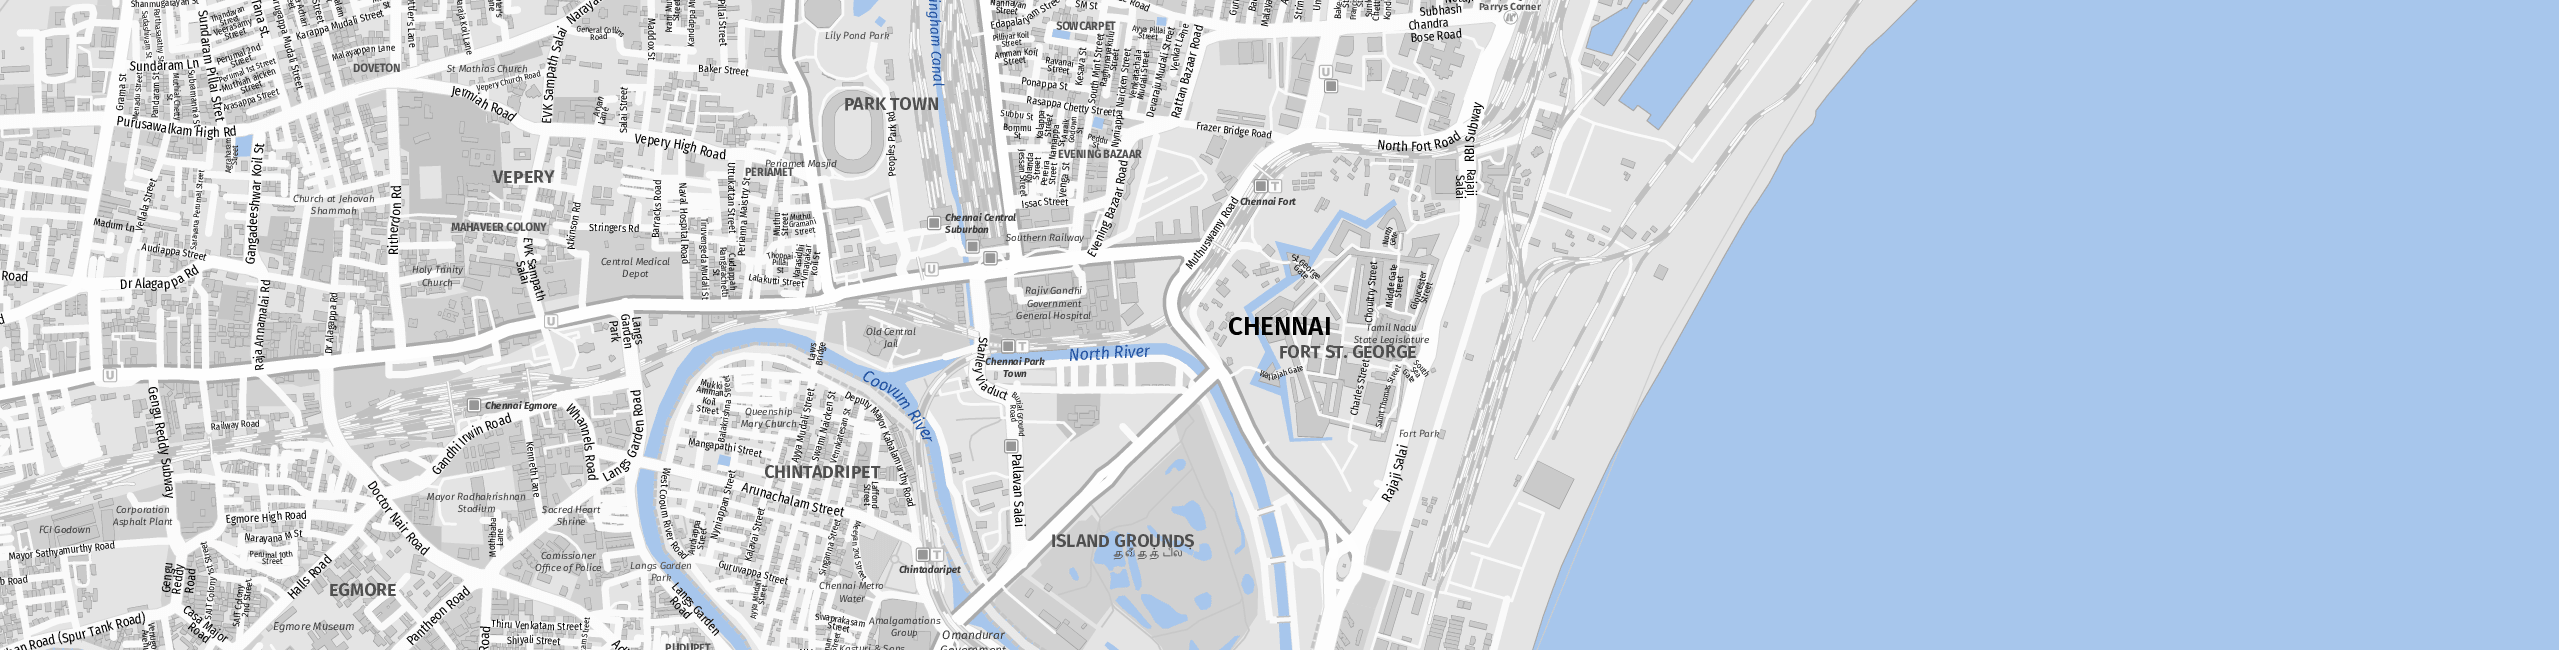 Stadtplan Chennai zum Downloaden.